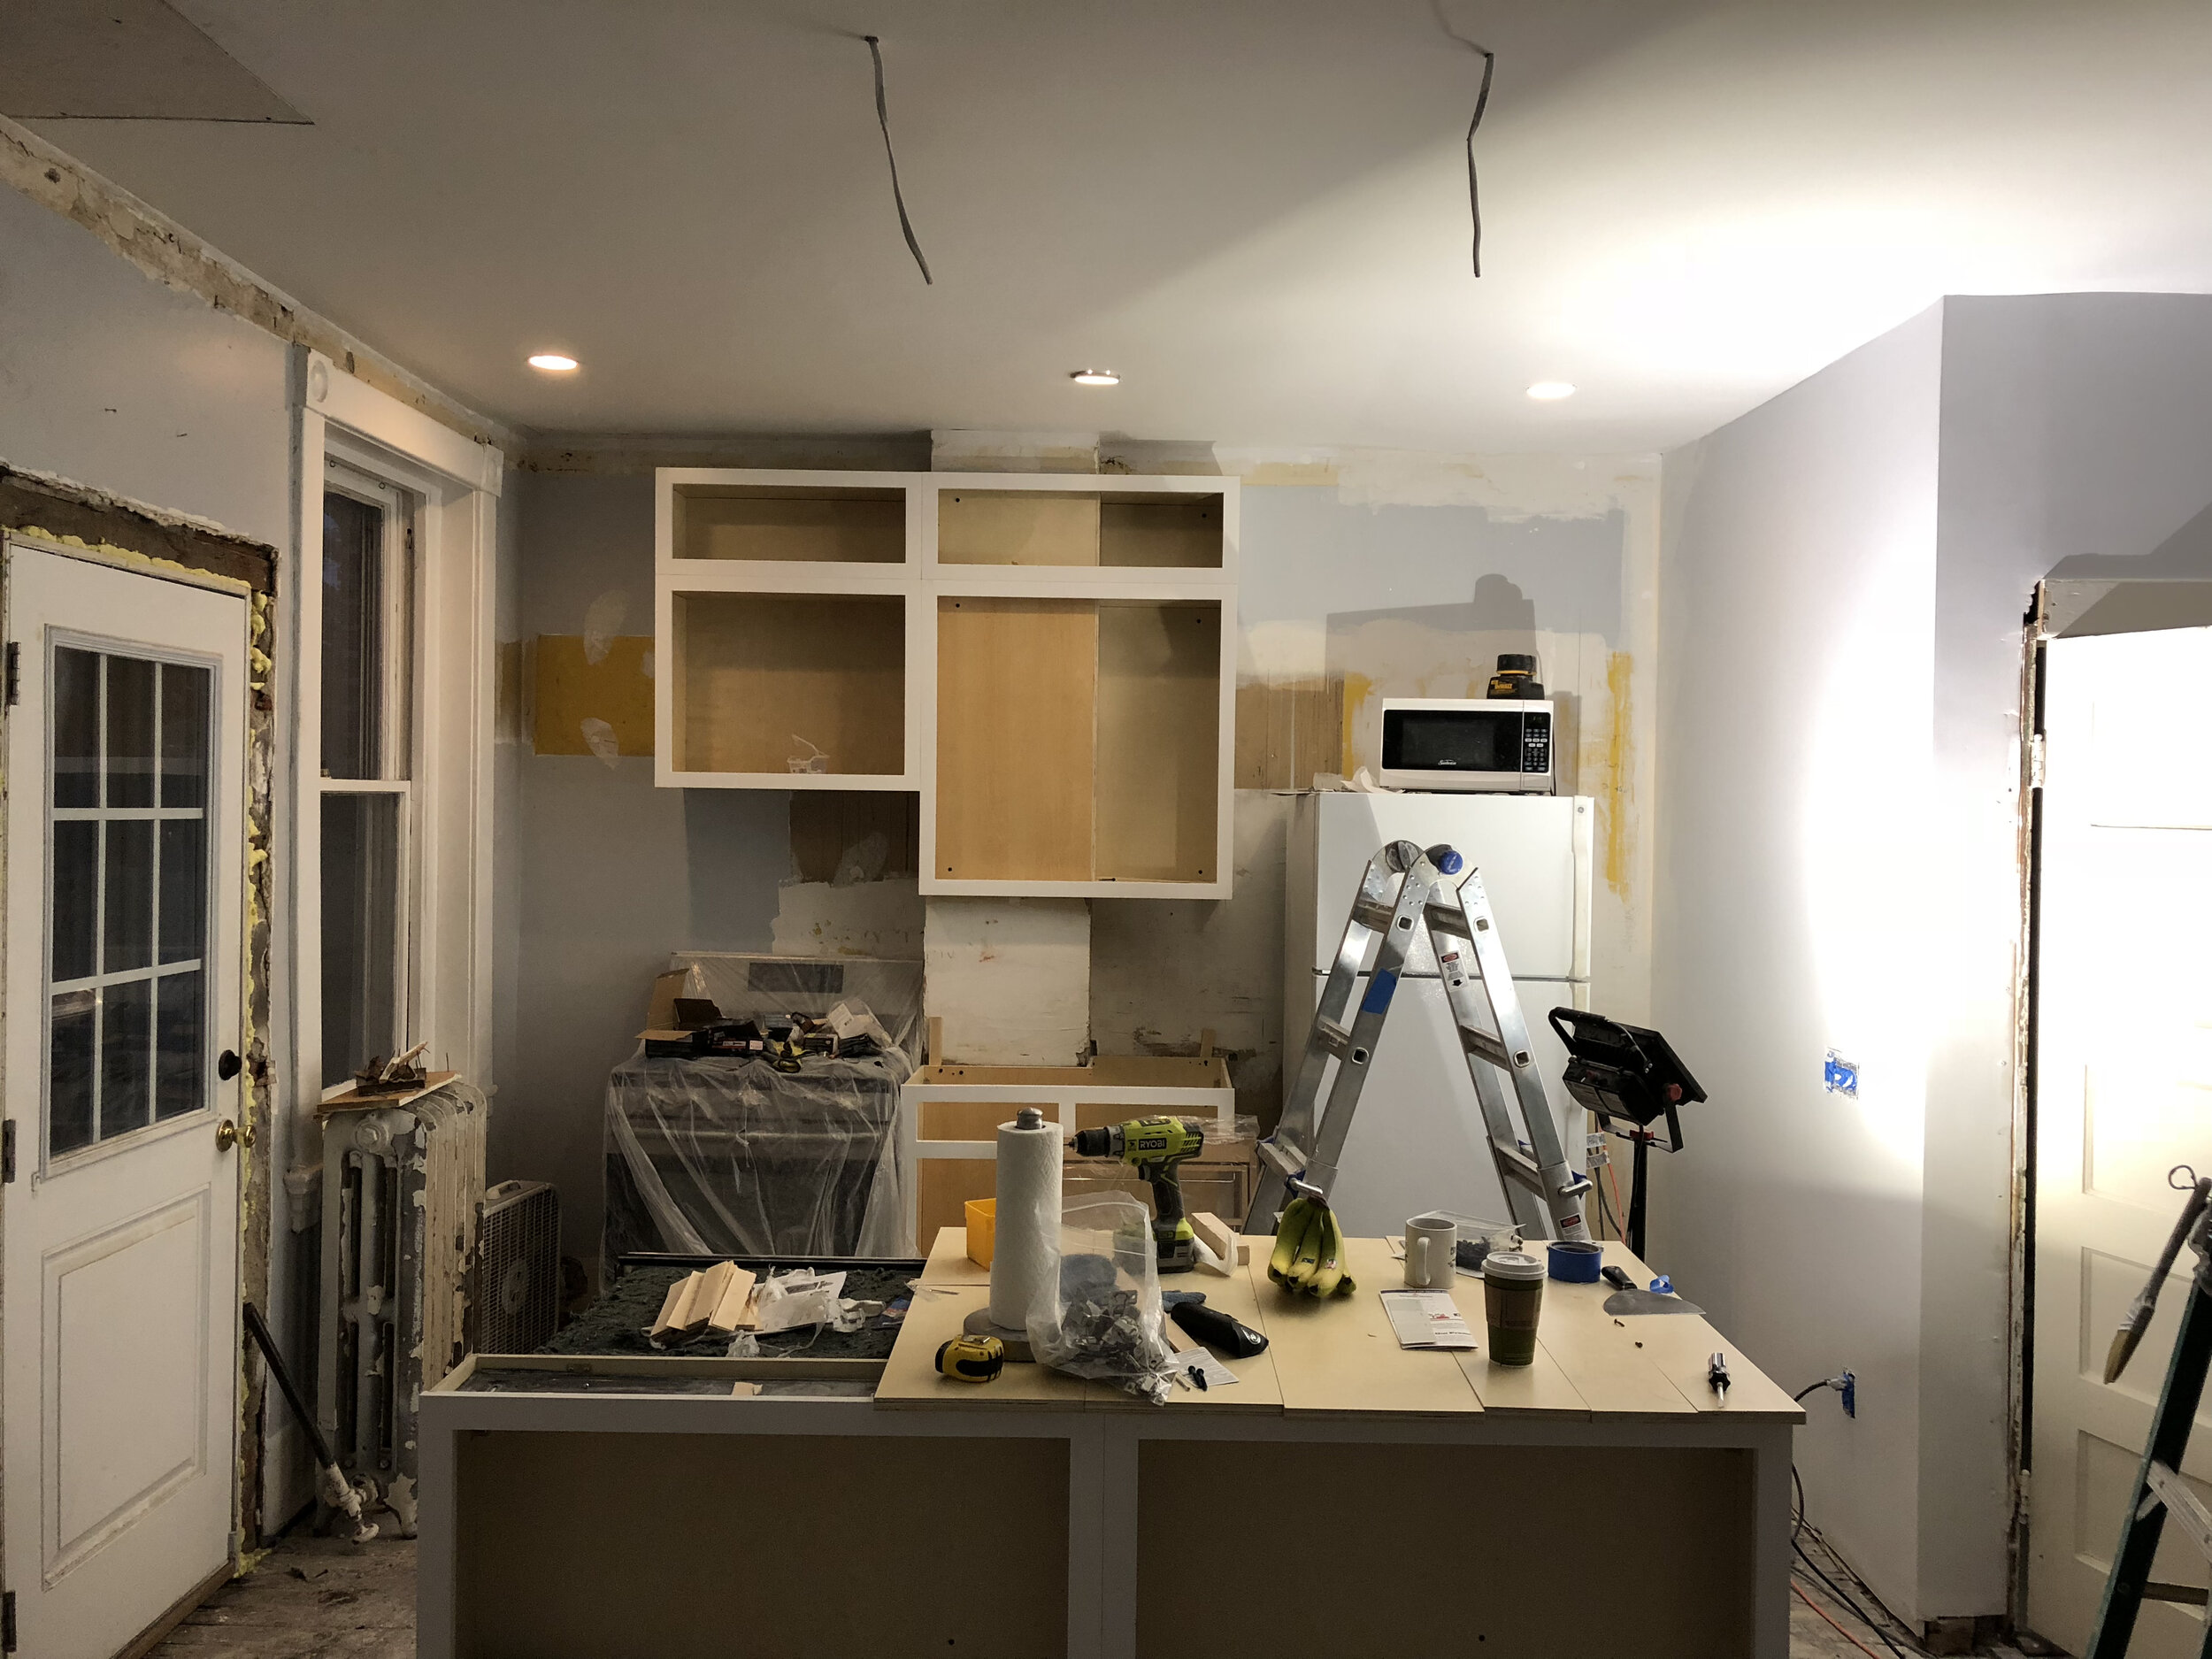 Kitchen - Under Construction